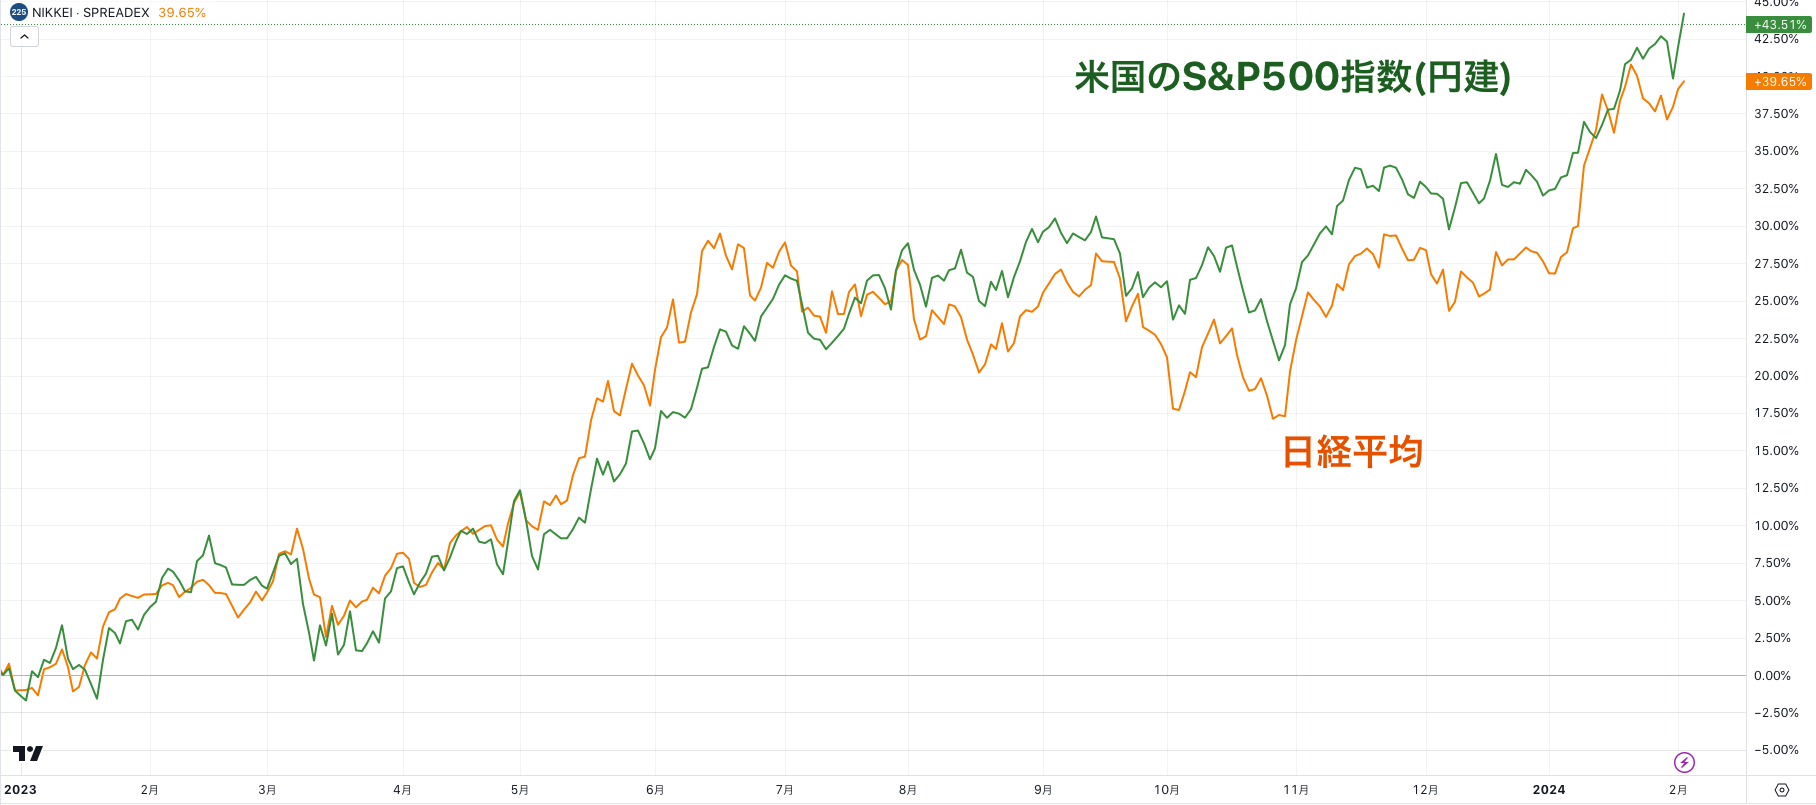 日経平均はSP500とドル円の掛け合わせと近似